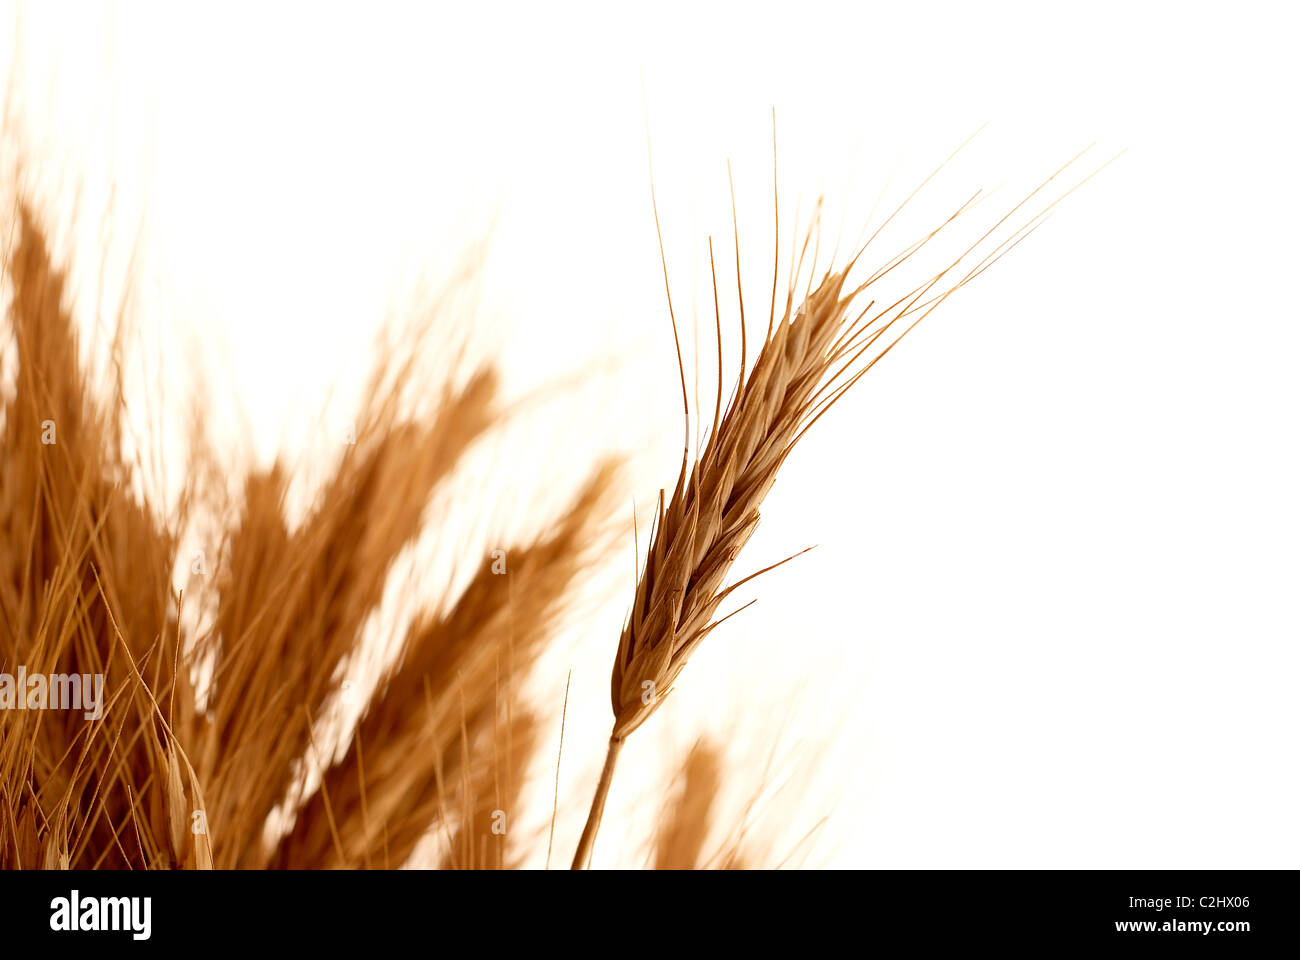 Wheat stalks Stock Photo